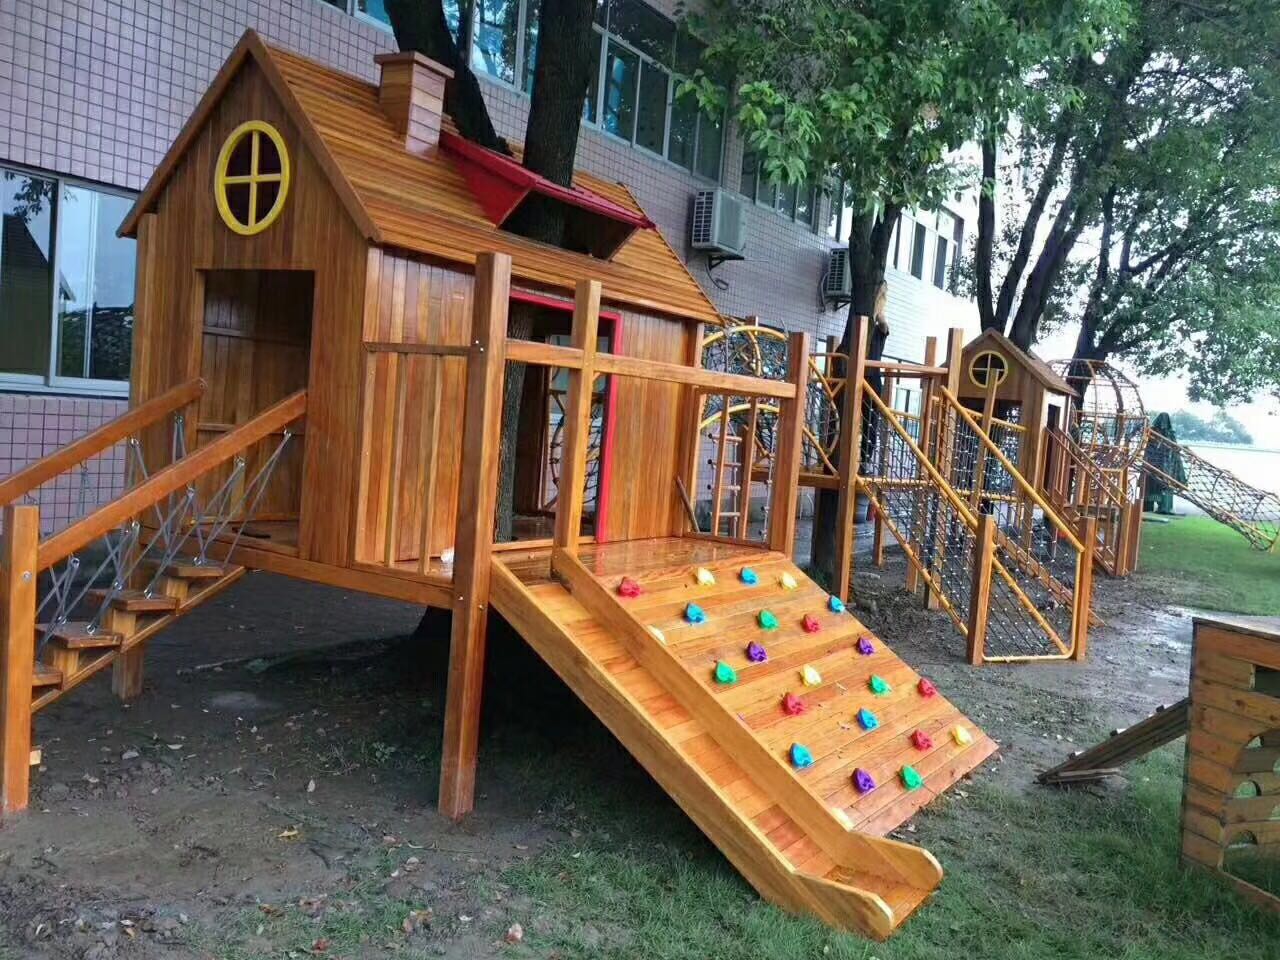 New kindergarten outdoor playground project!